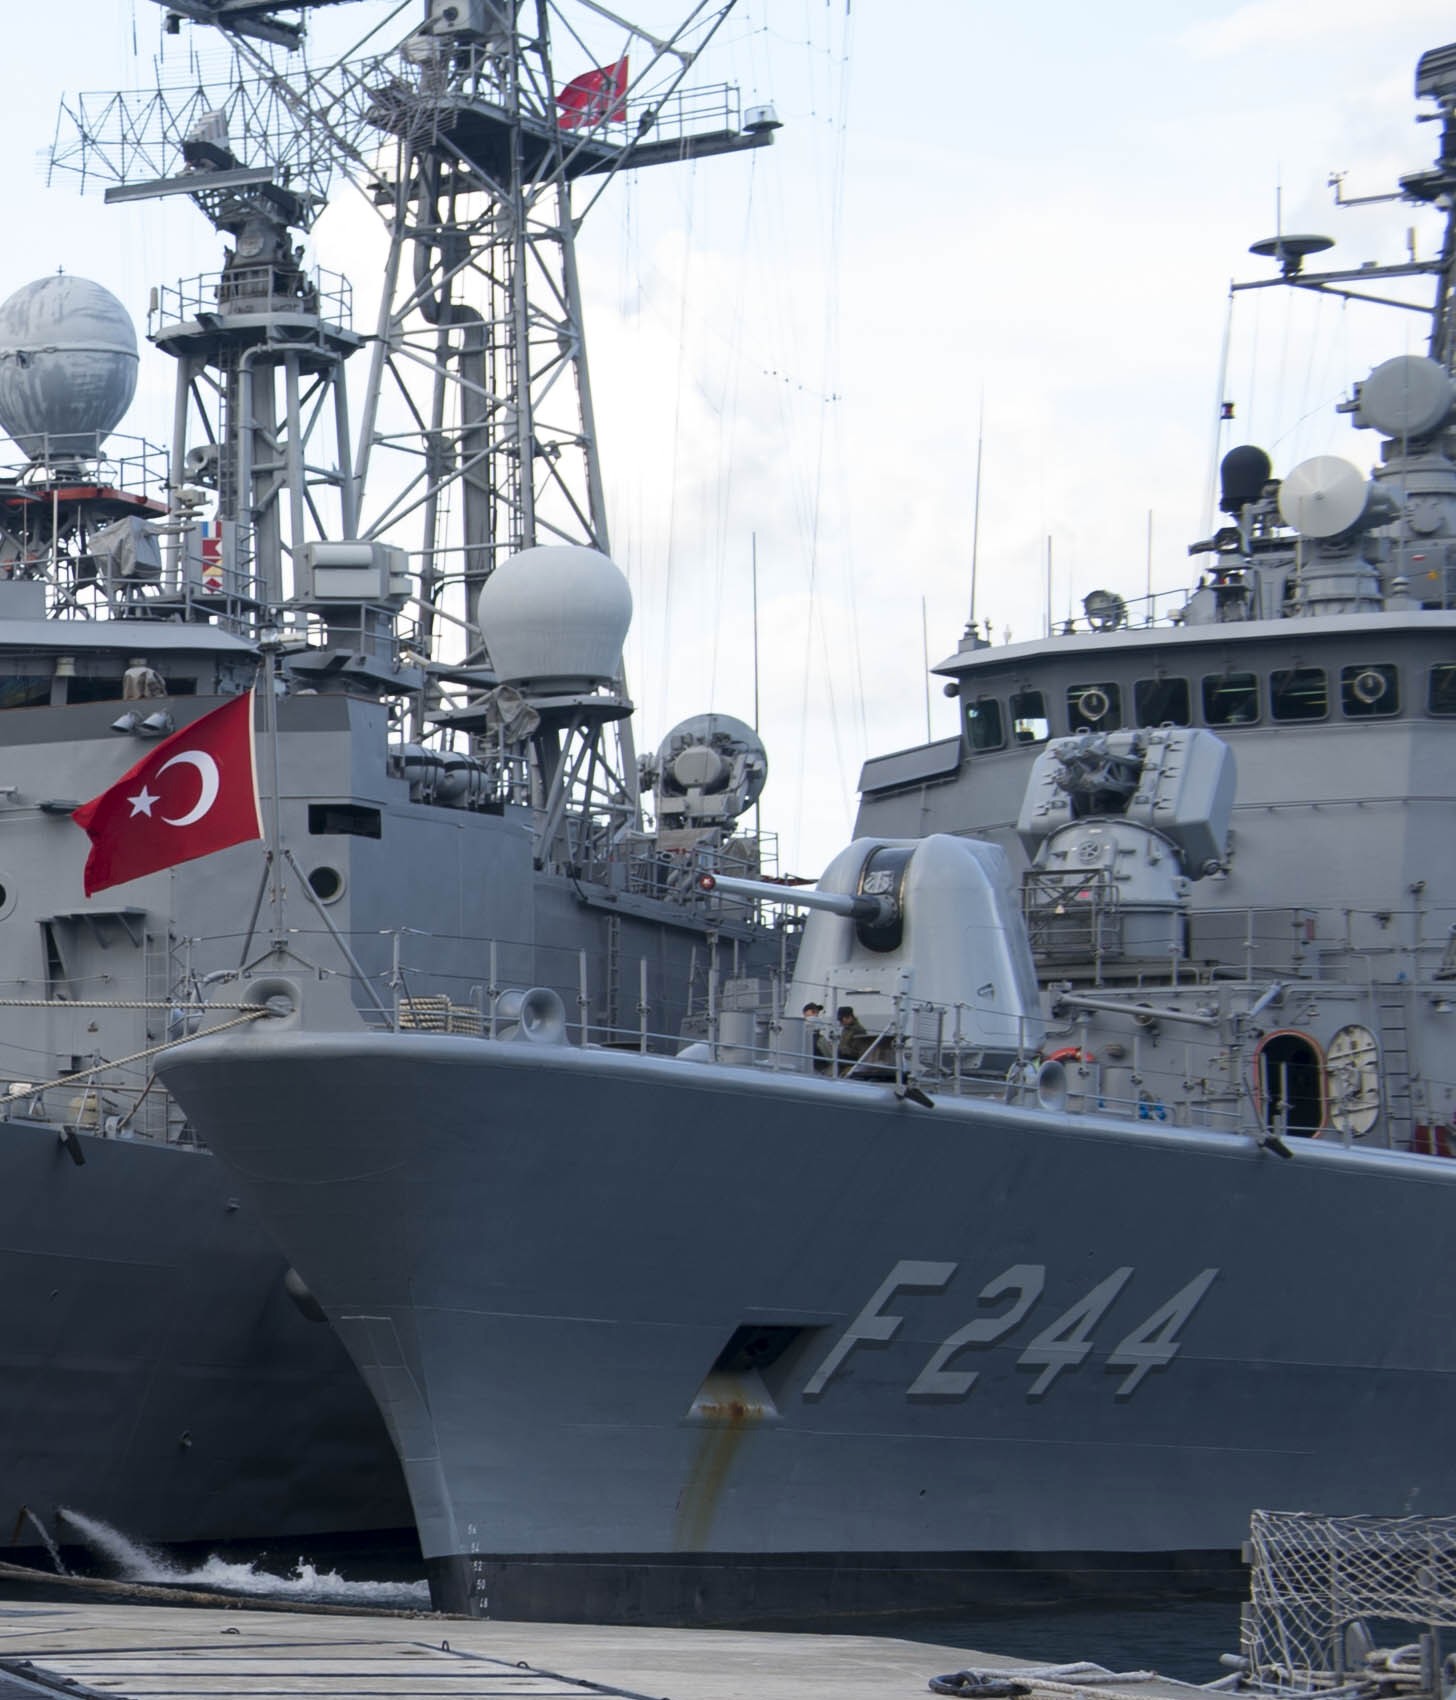 f-244 tcg barbaros class frigate meko-200tn turkish navy türk deniz kuvvetleri 04